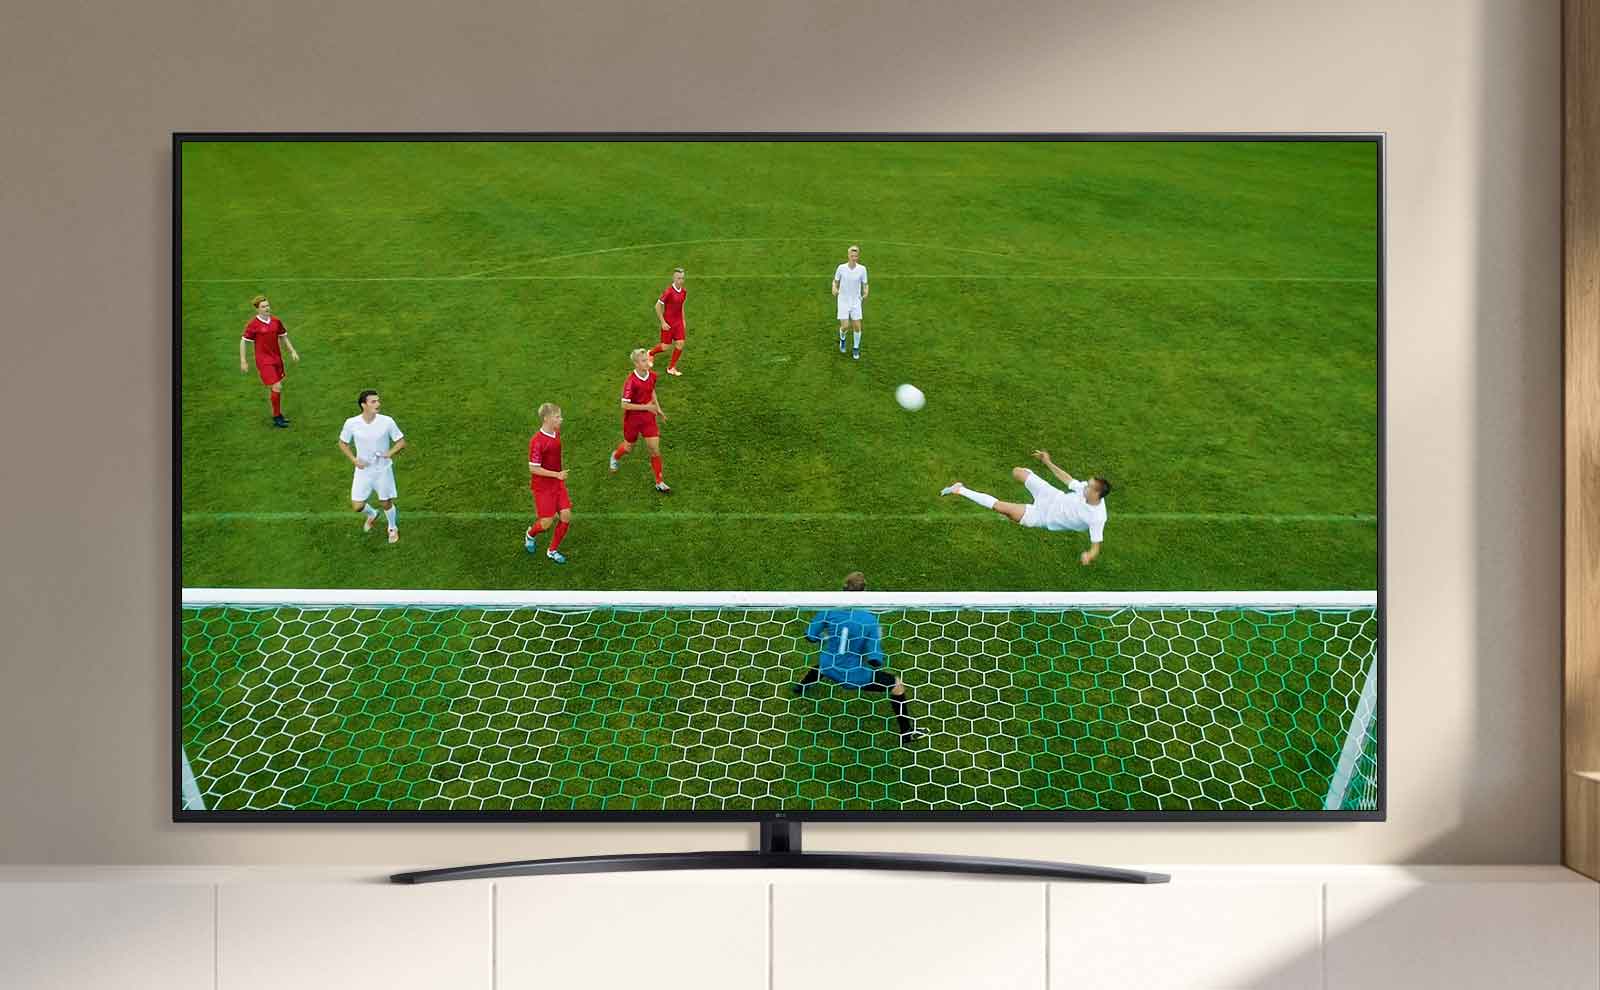 Un écran de téléviseur lit une vidéo d’un joueur de football marquant un but lors d’un match. (lire la vidéo)